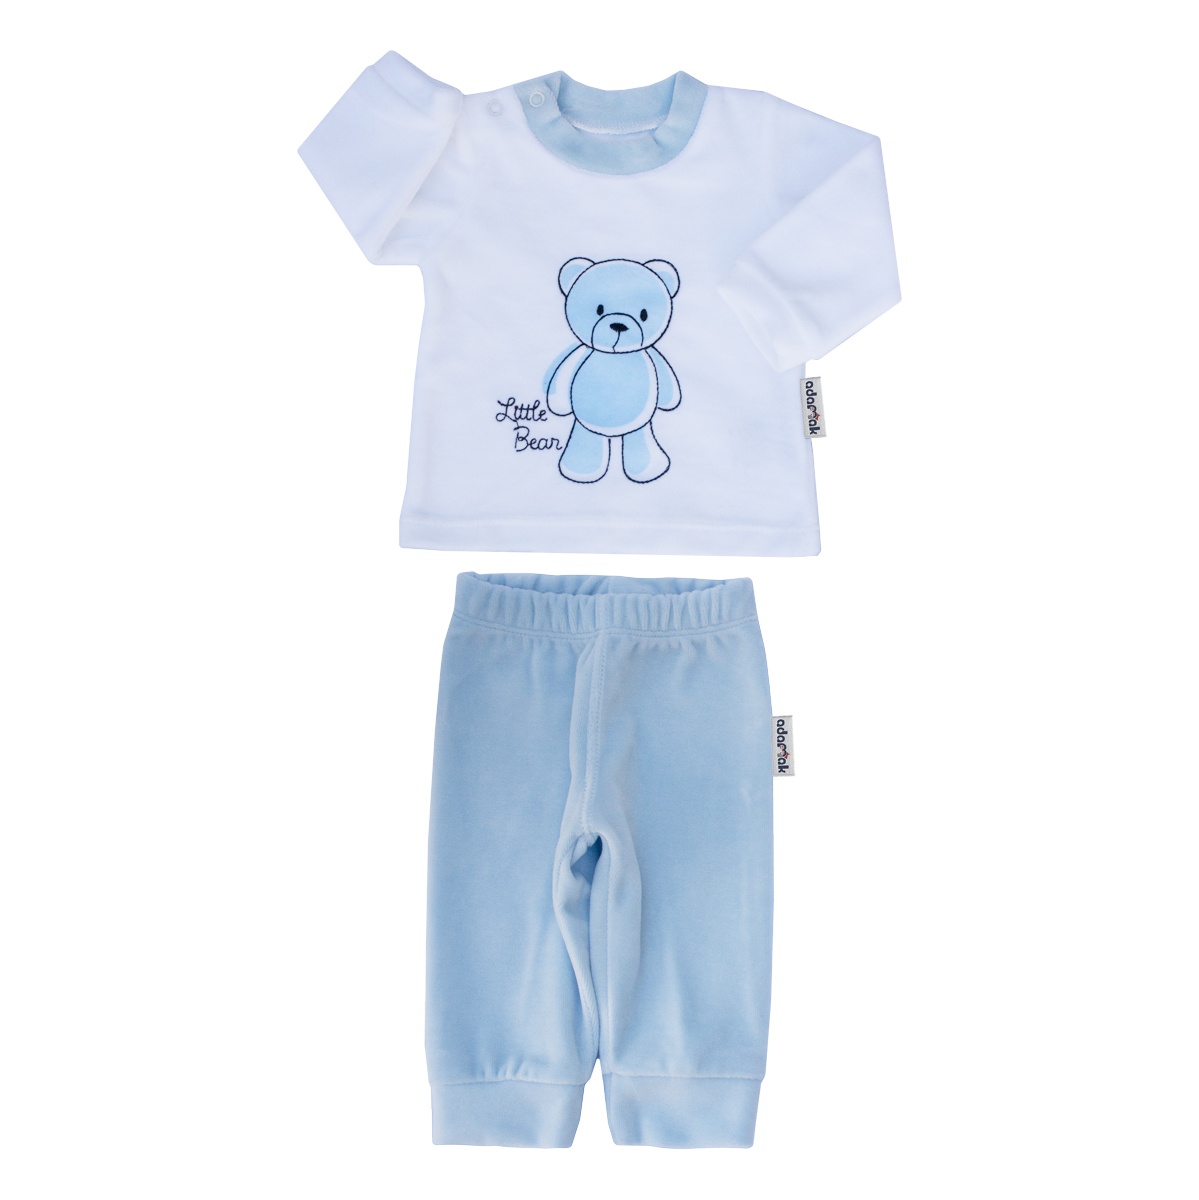 ست تیشرت و شلوار نوزاد آدمک کد 1180011 رنگ آبی